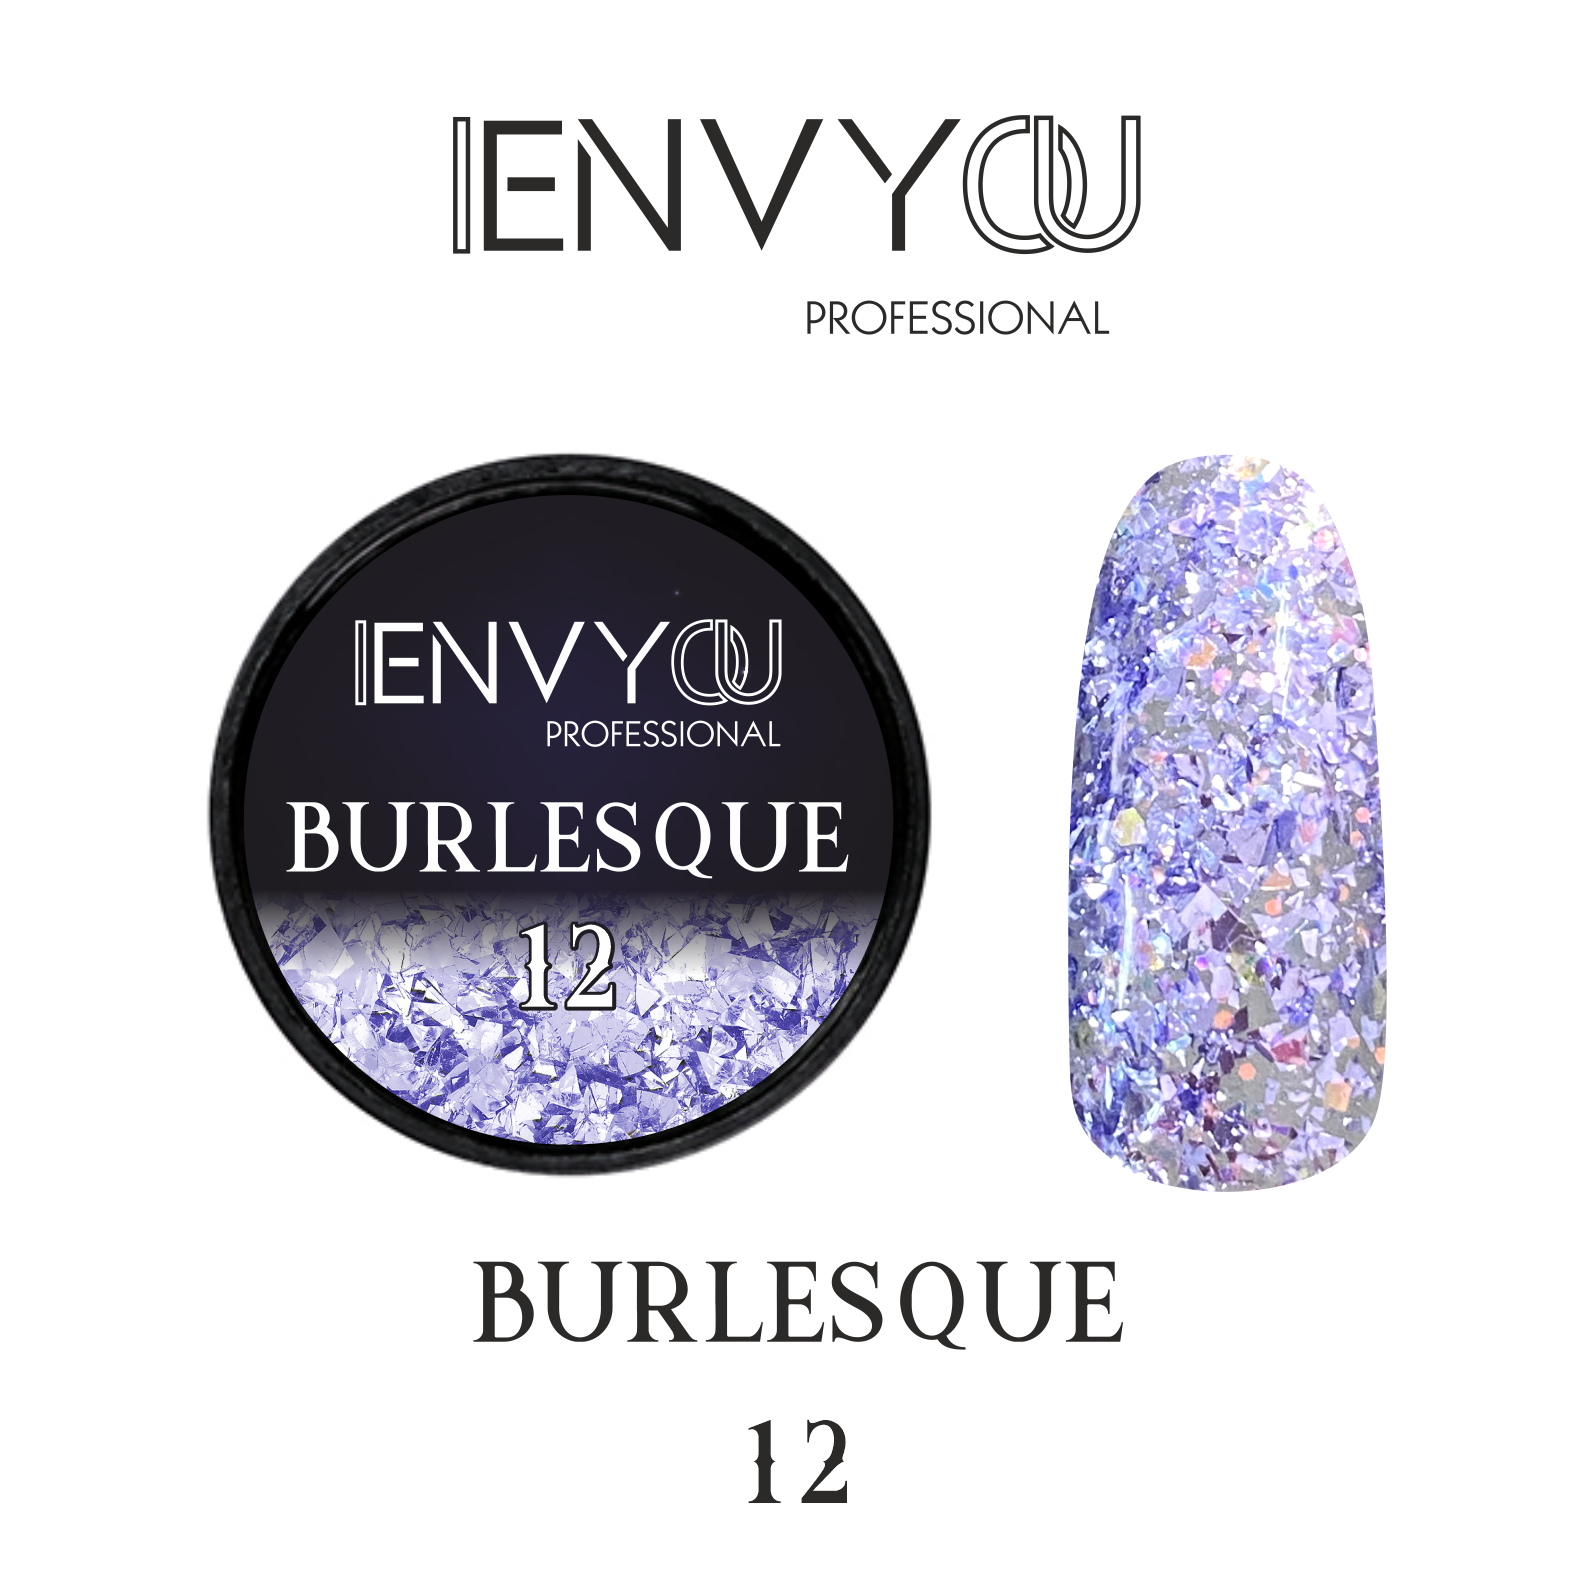 ENVY Burlesque 12 6g